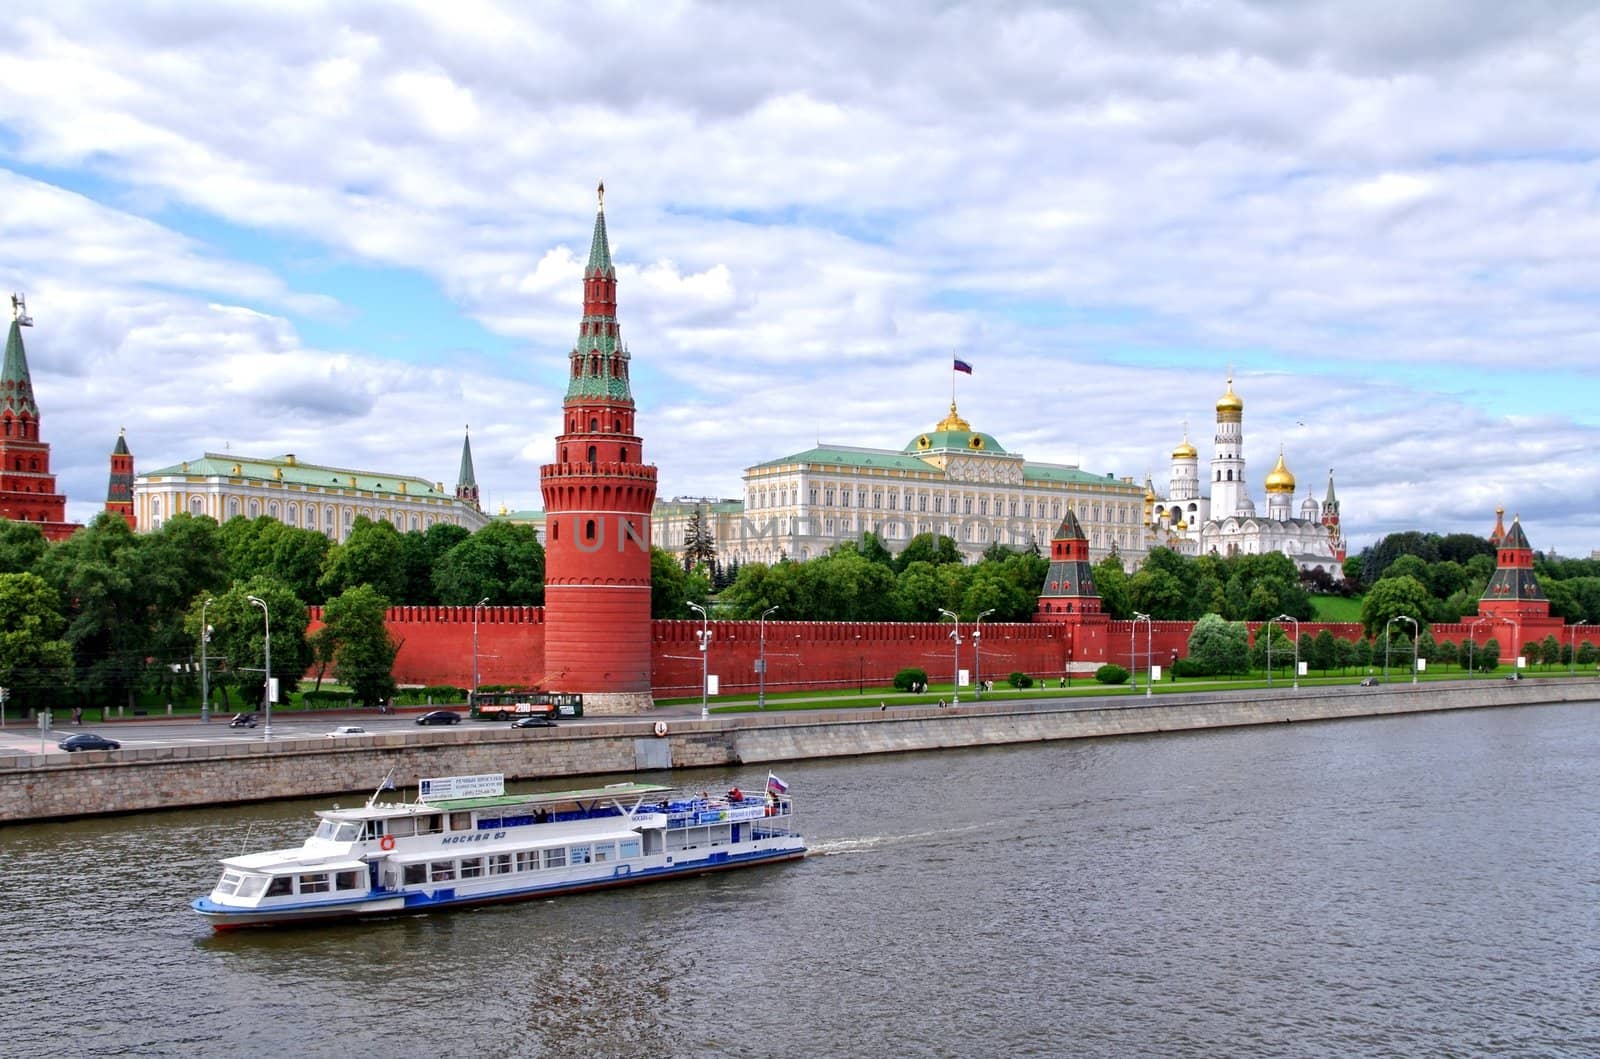 Moscow Kremlin by Stoyanov